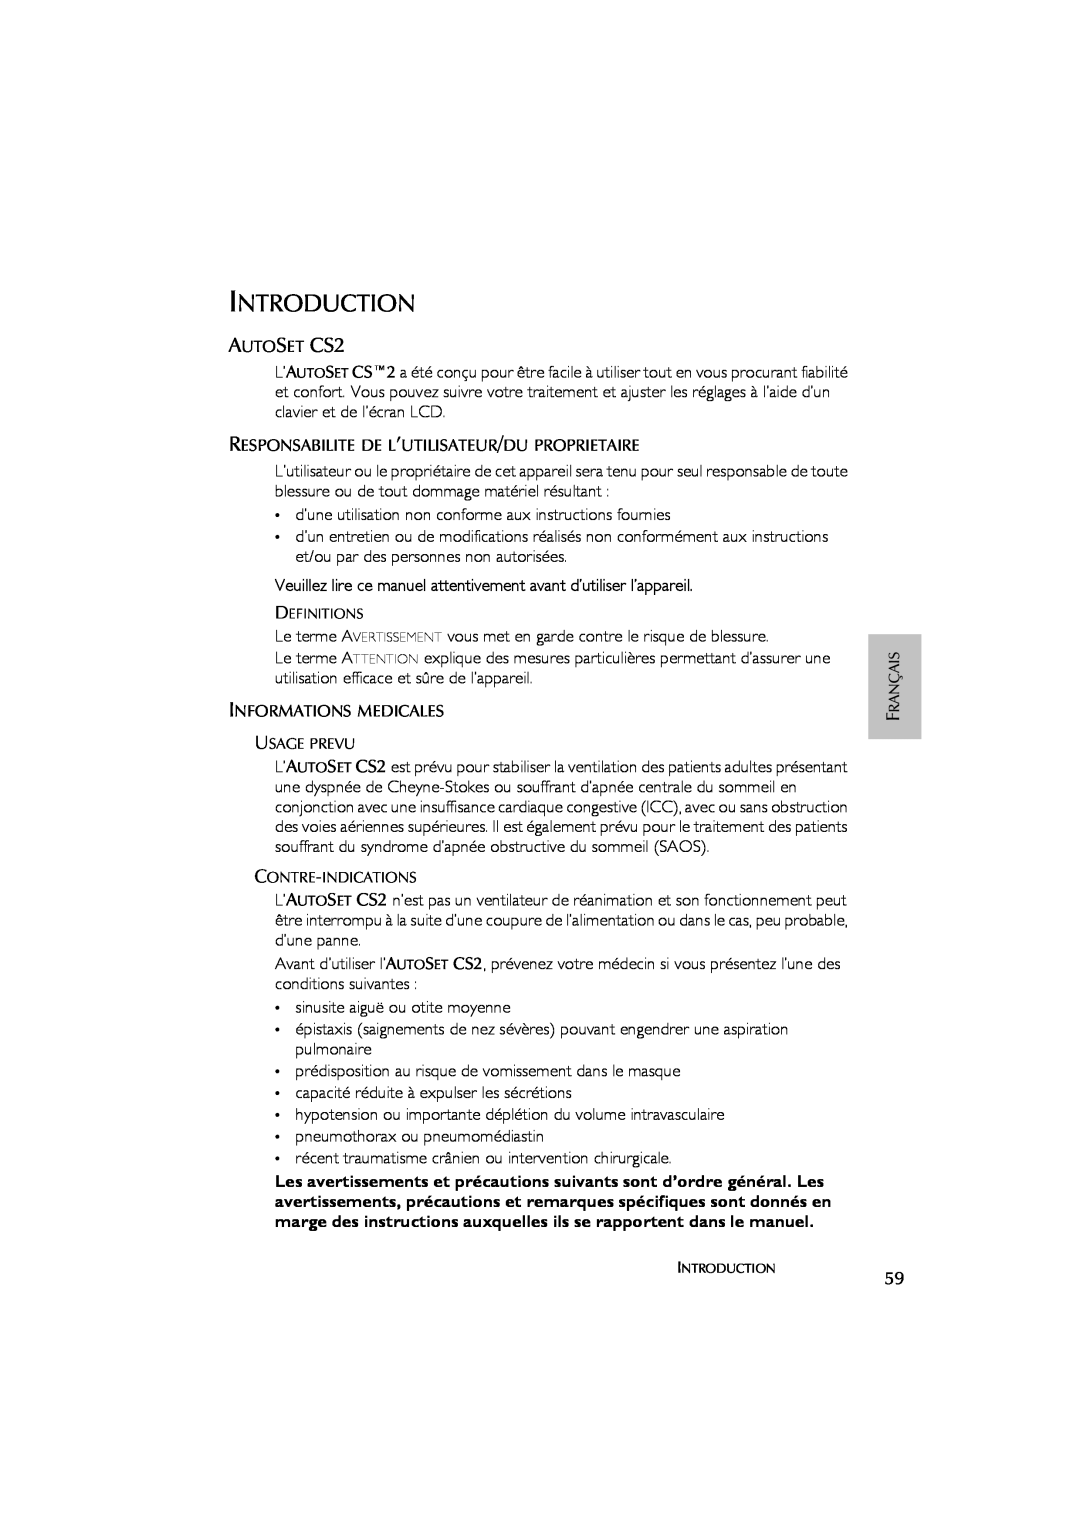 ResMed AutoSet CS 2 user manual Introduction, Veuillez lire ce manuel attentivement avant d’utiliser l’appareil 